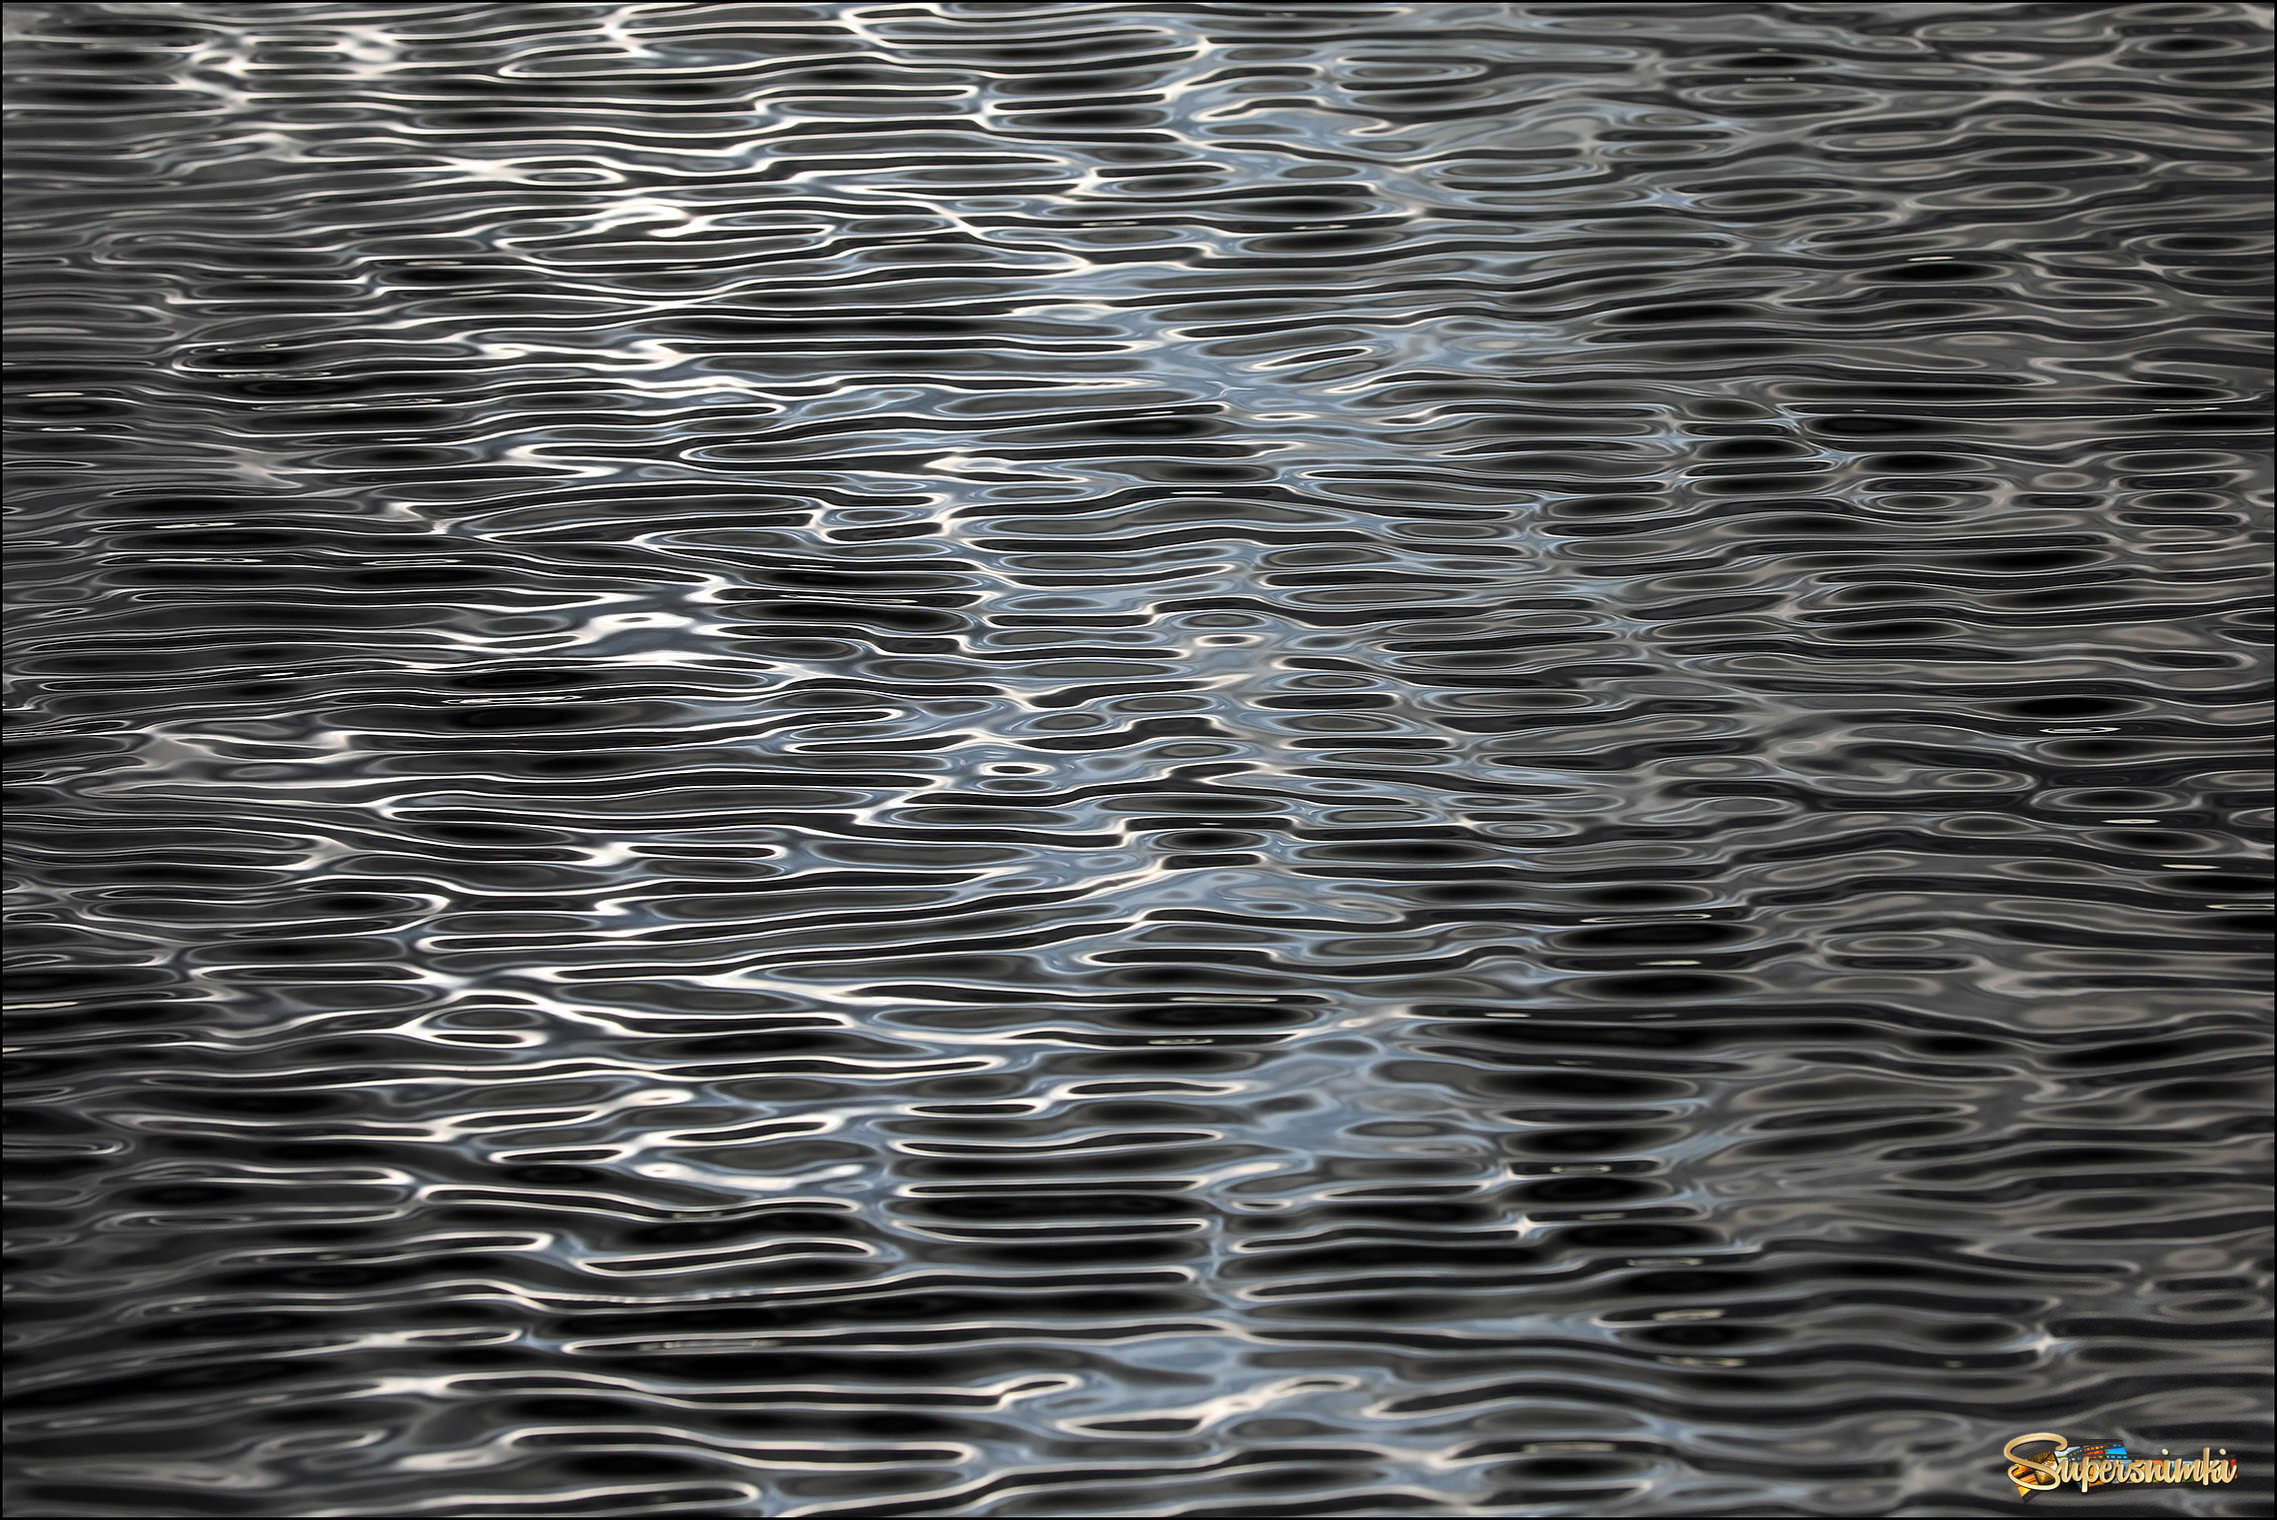 Художественная рябь на воде | Фотосайт СуперСнимки.Ру